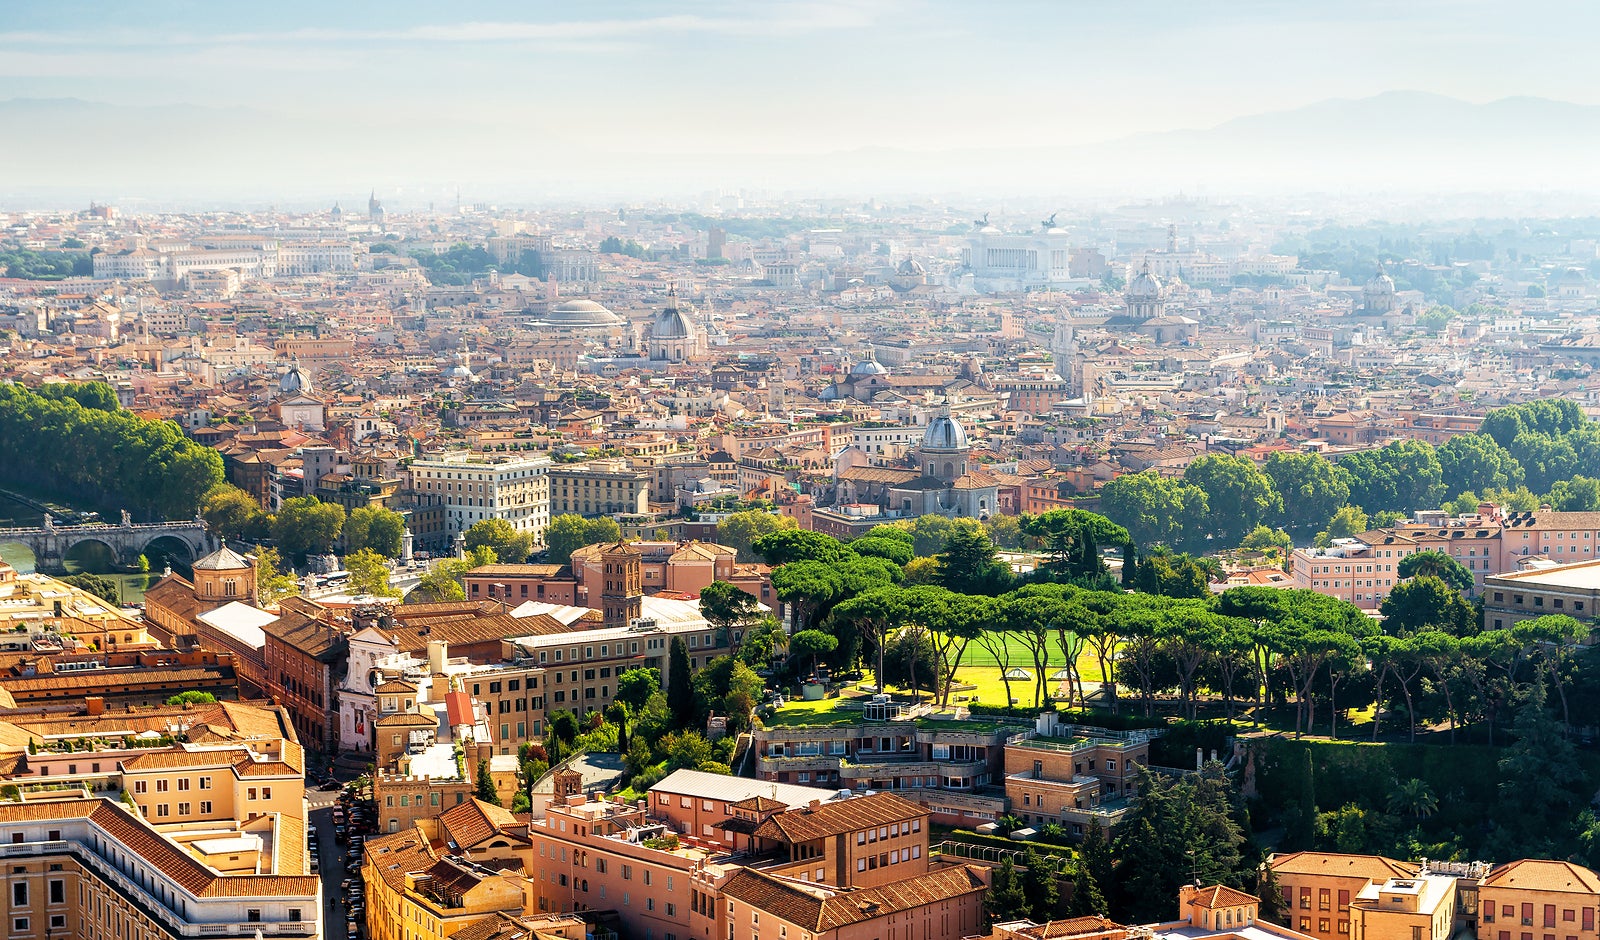 the Rome skyline